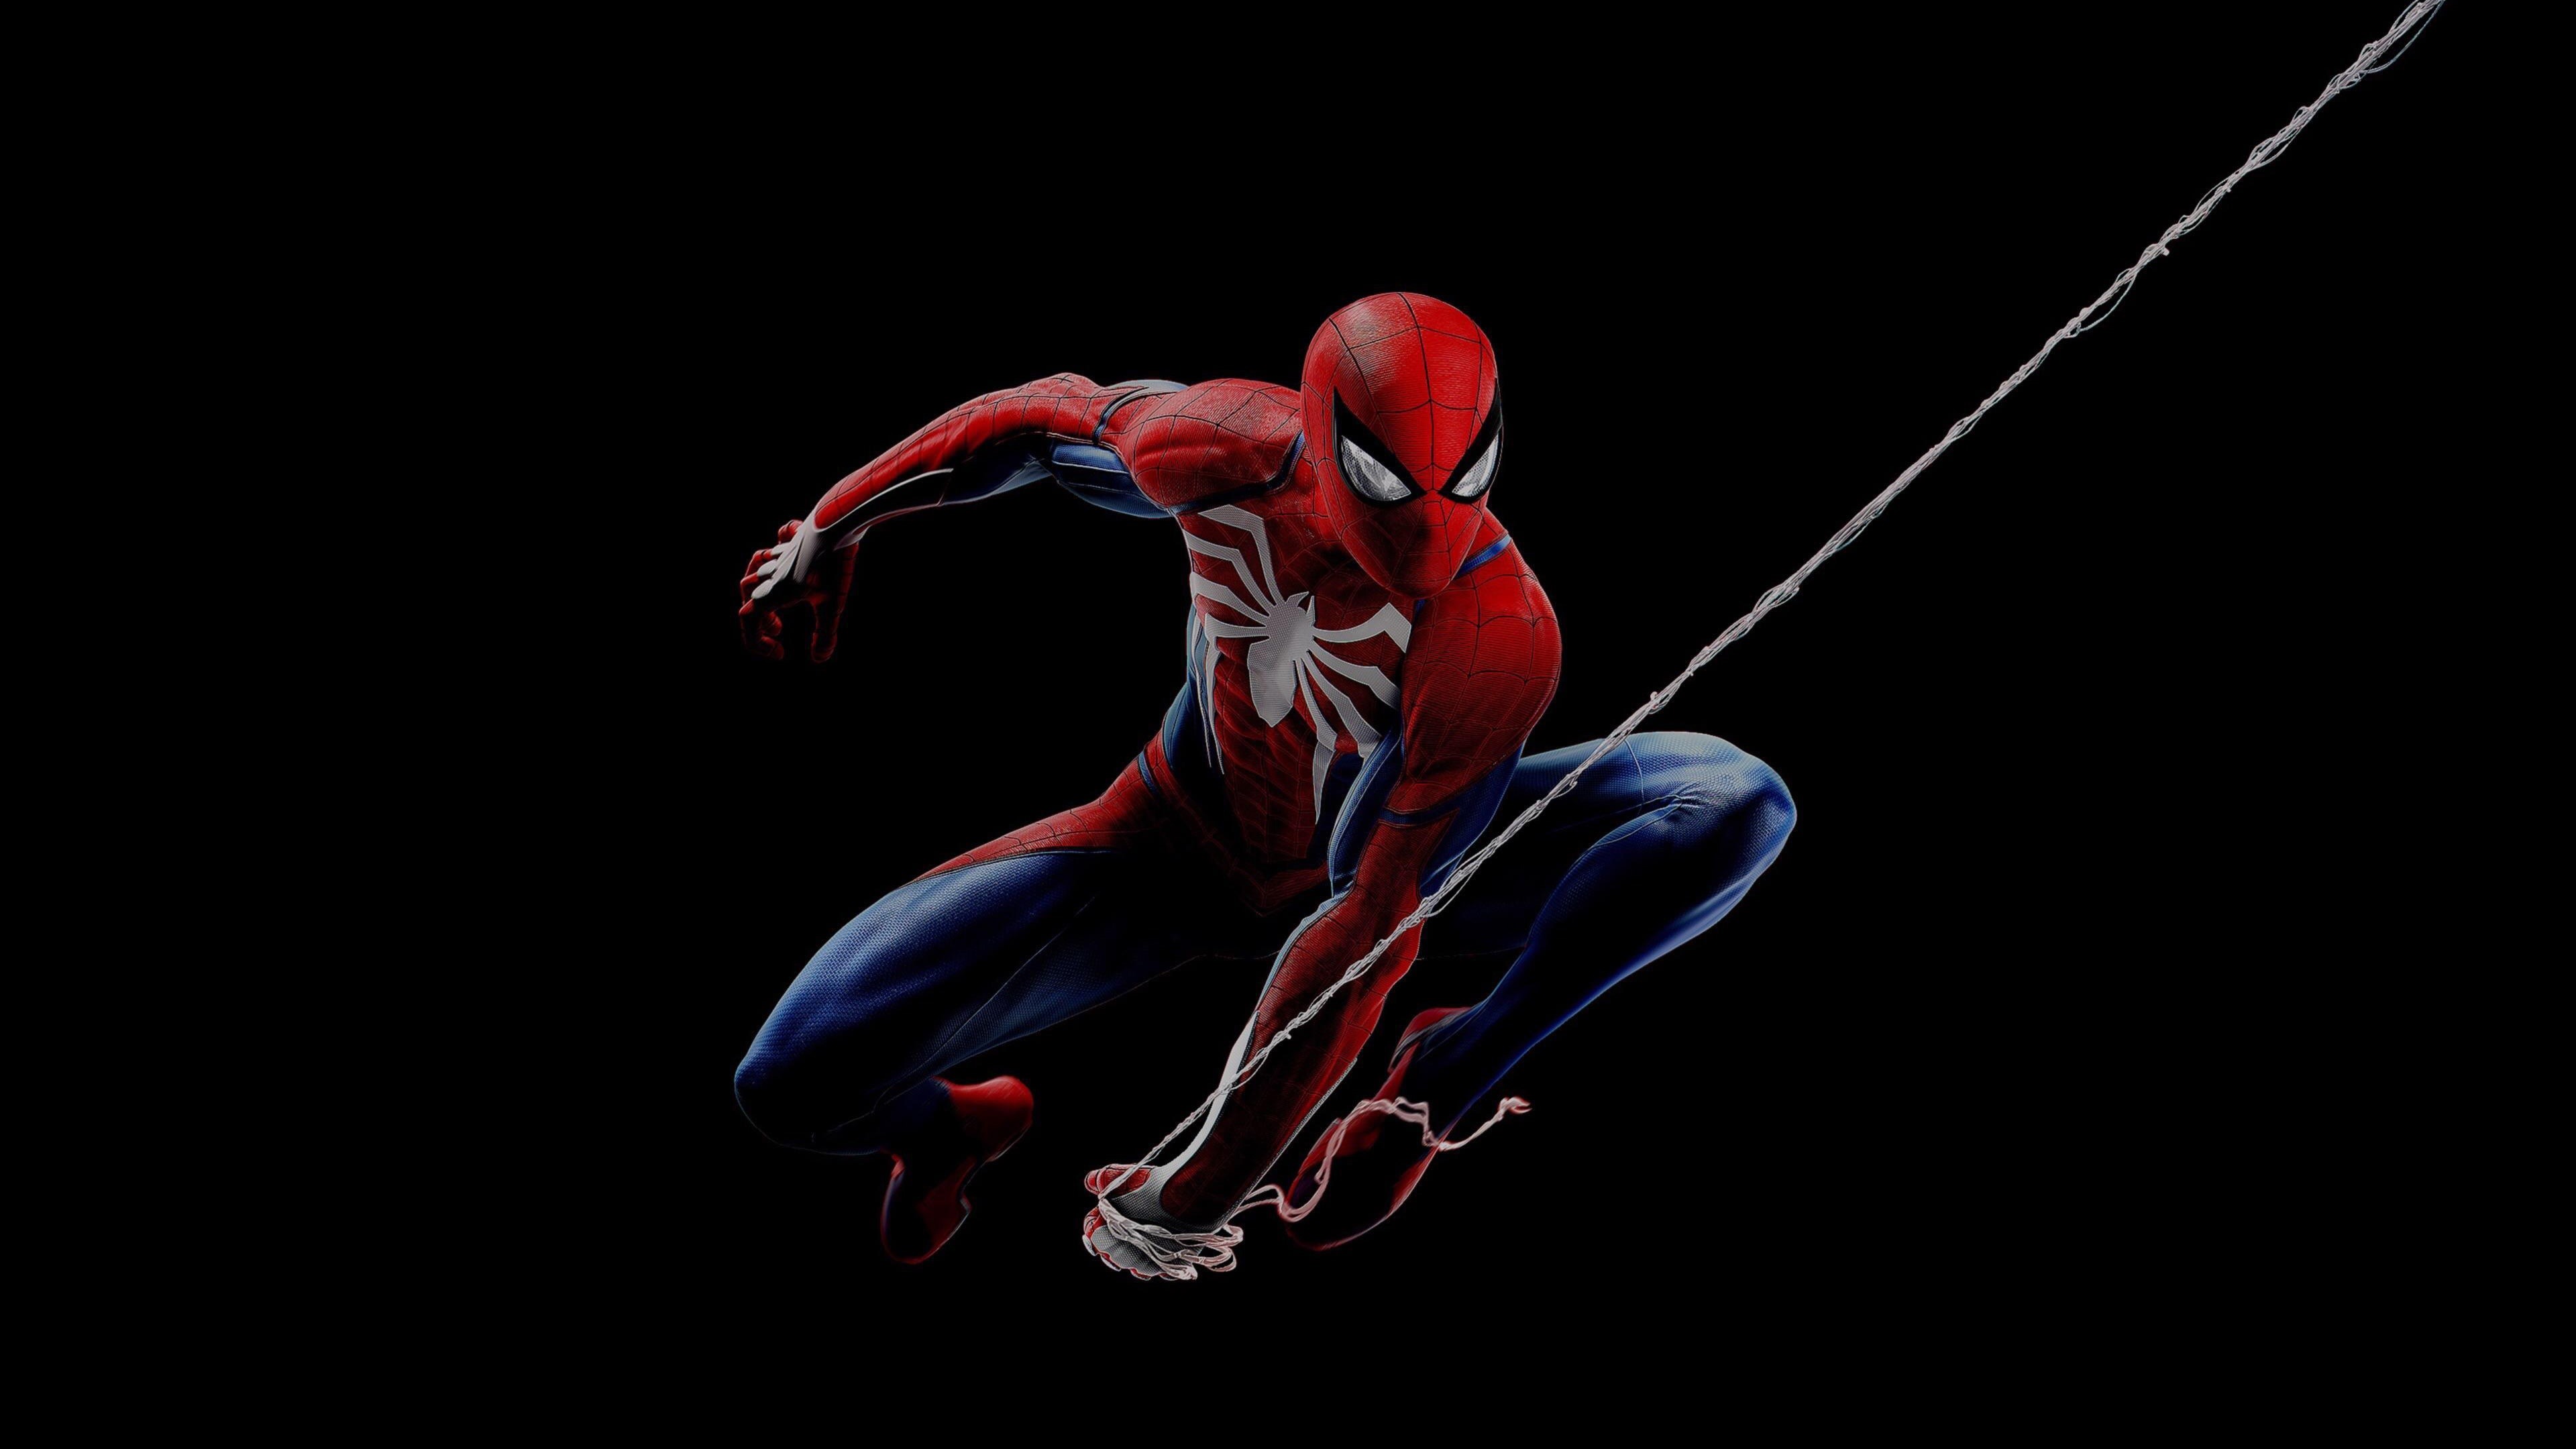 Spider-man-superhero-black-background_3840x2160.jpg